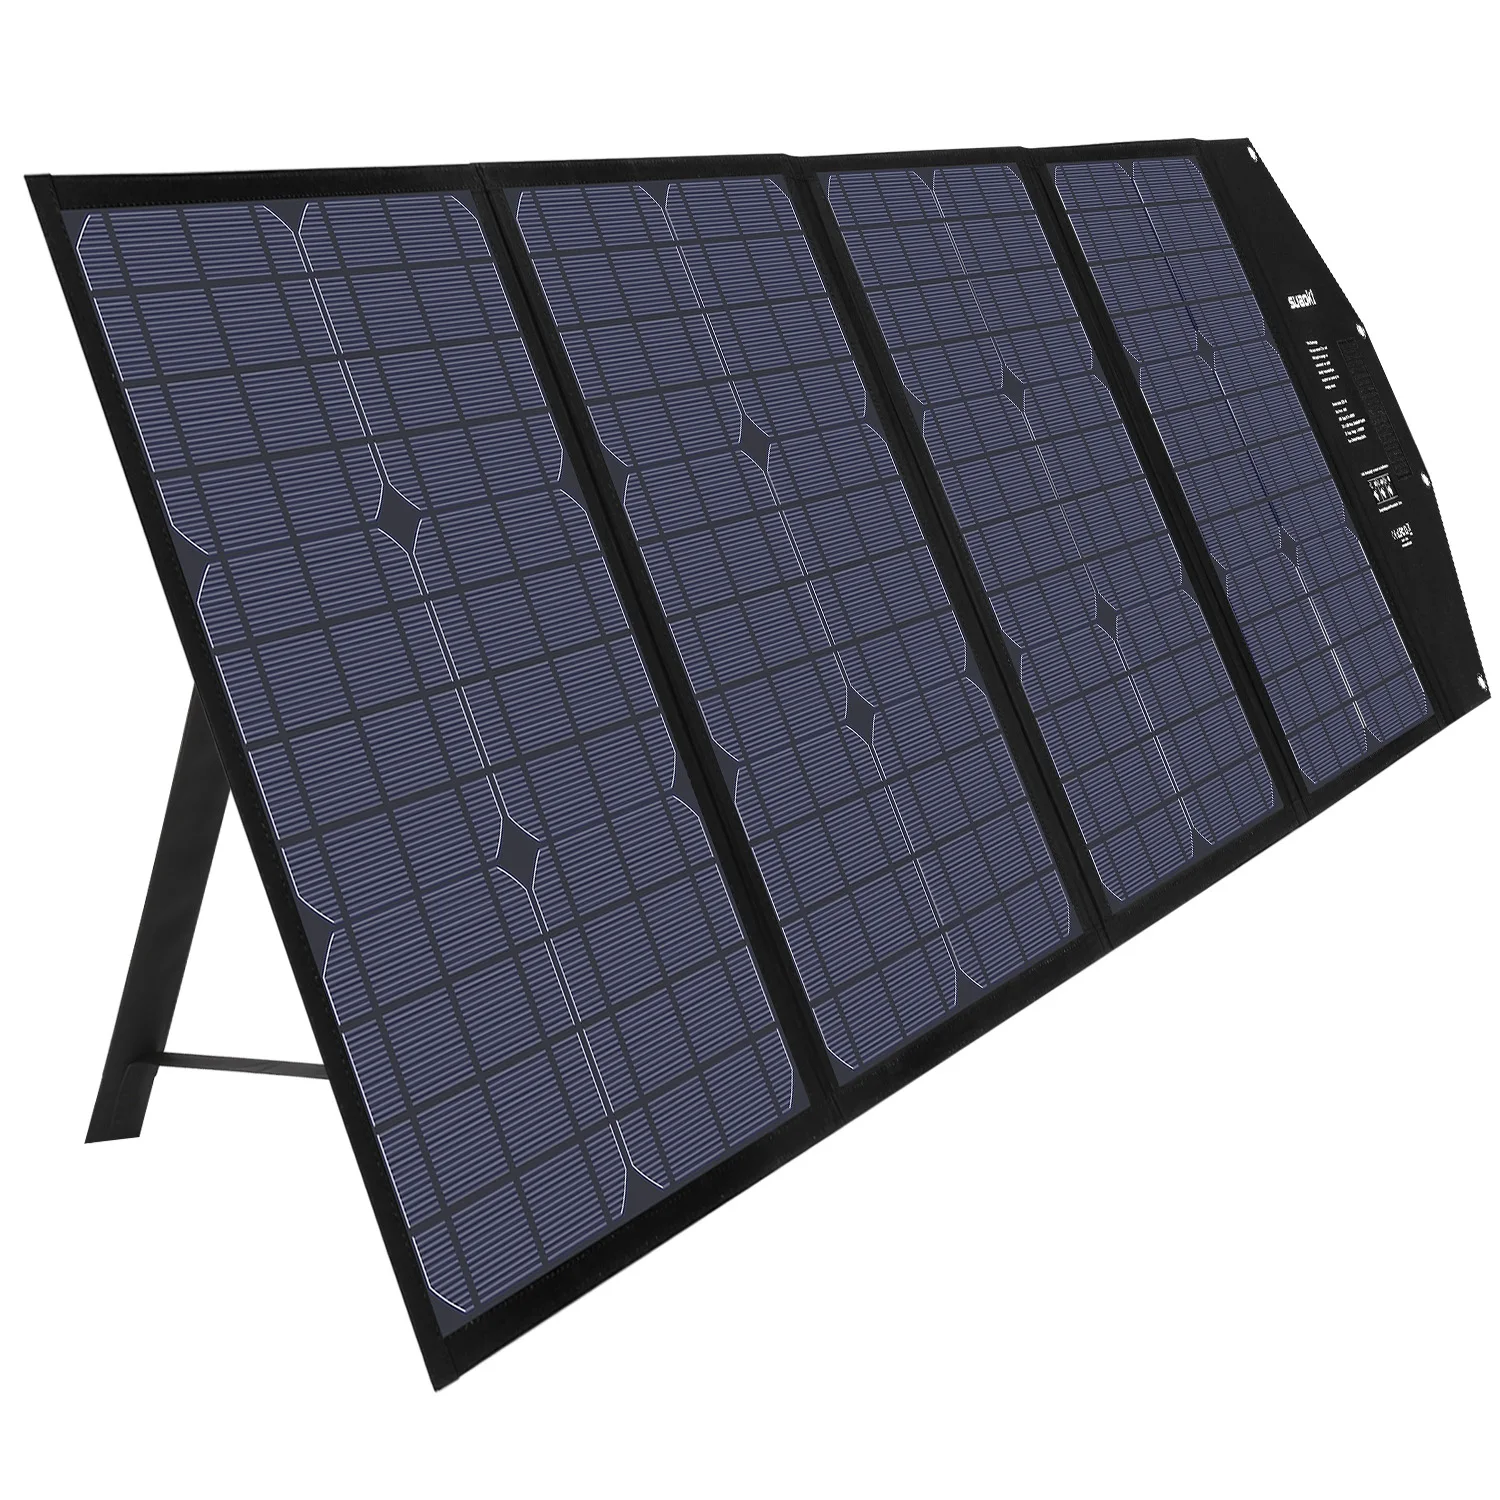 SUAOKI 120W Solarmodule Faltbar Ladegerät Solarpanel Batterie for Handy Auto PC 